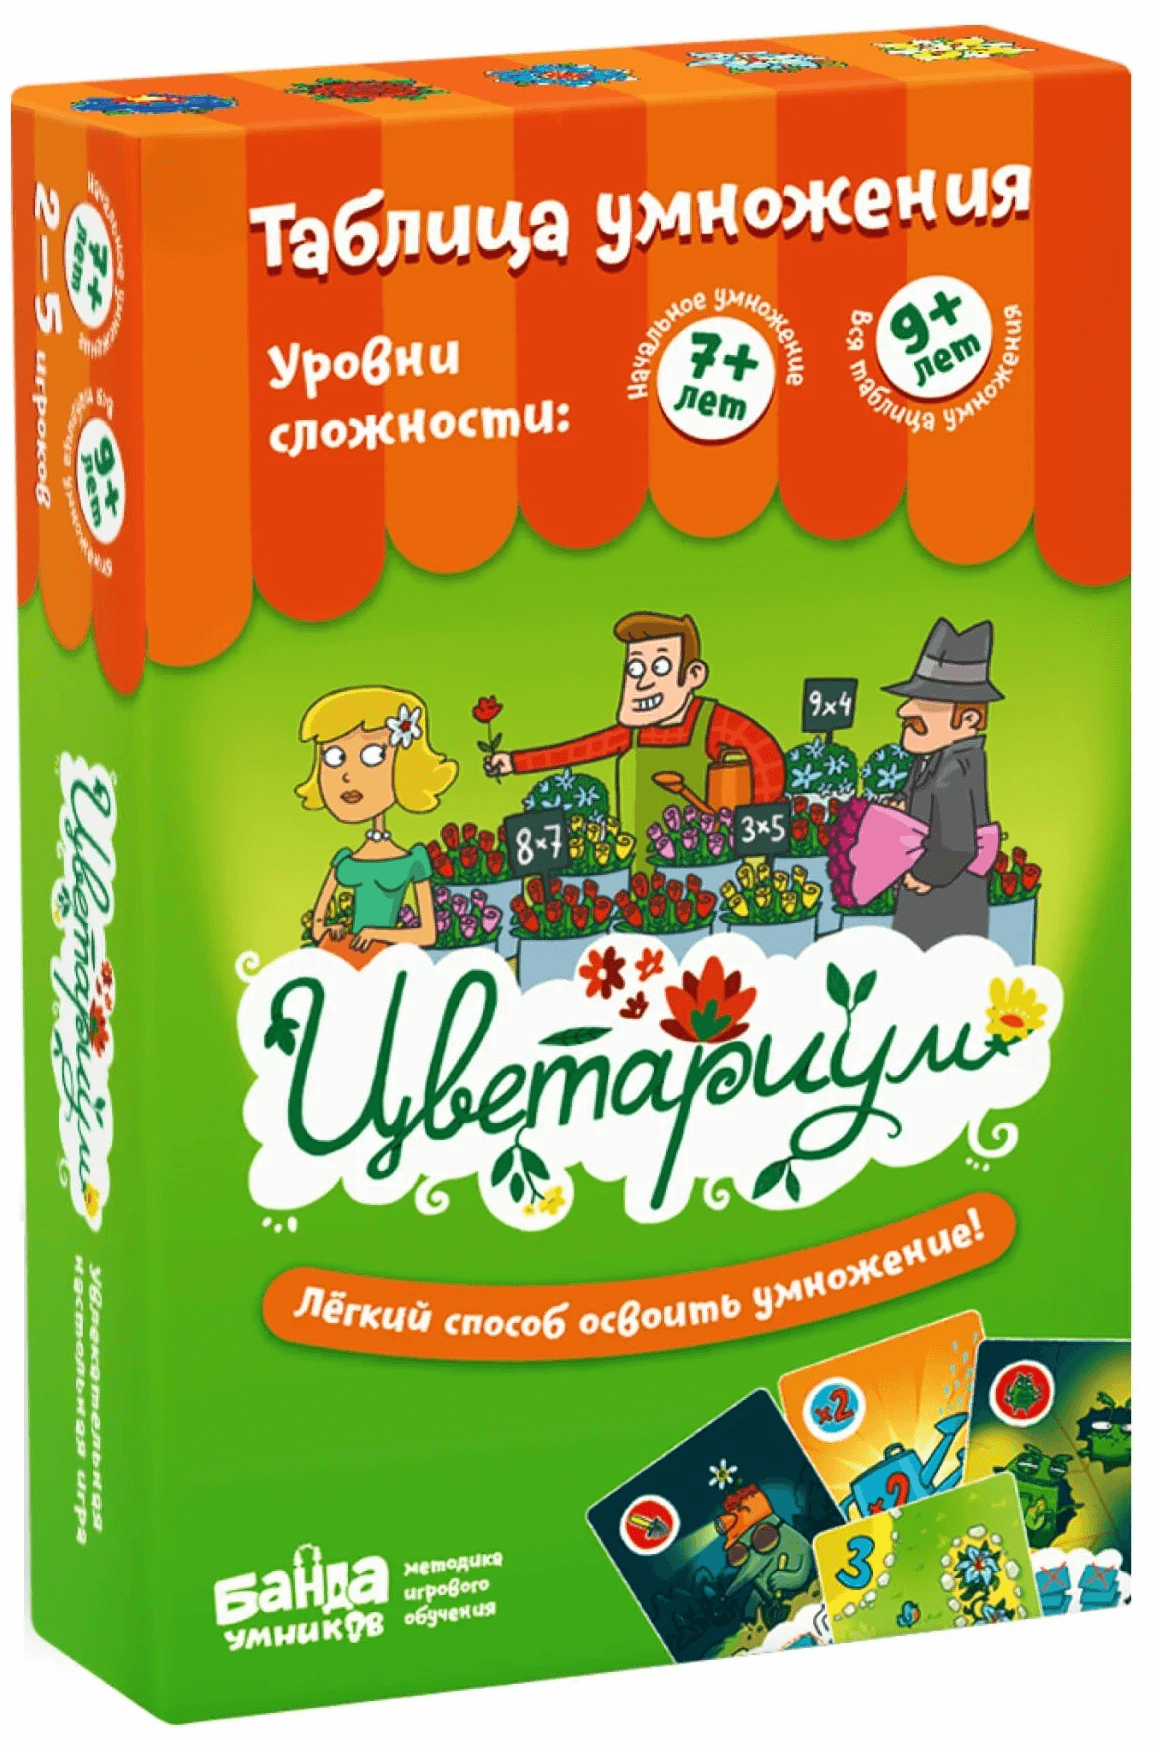 Банда Умников Цветариум (настольно-печатная игра ТМ «Банда умников») УМ035